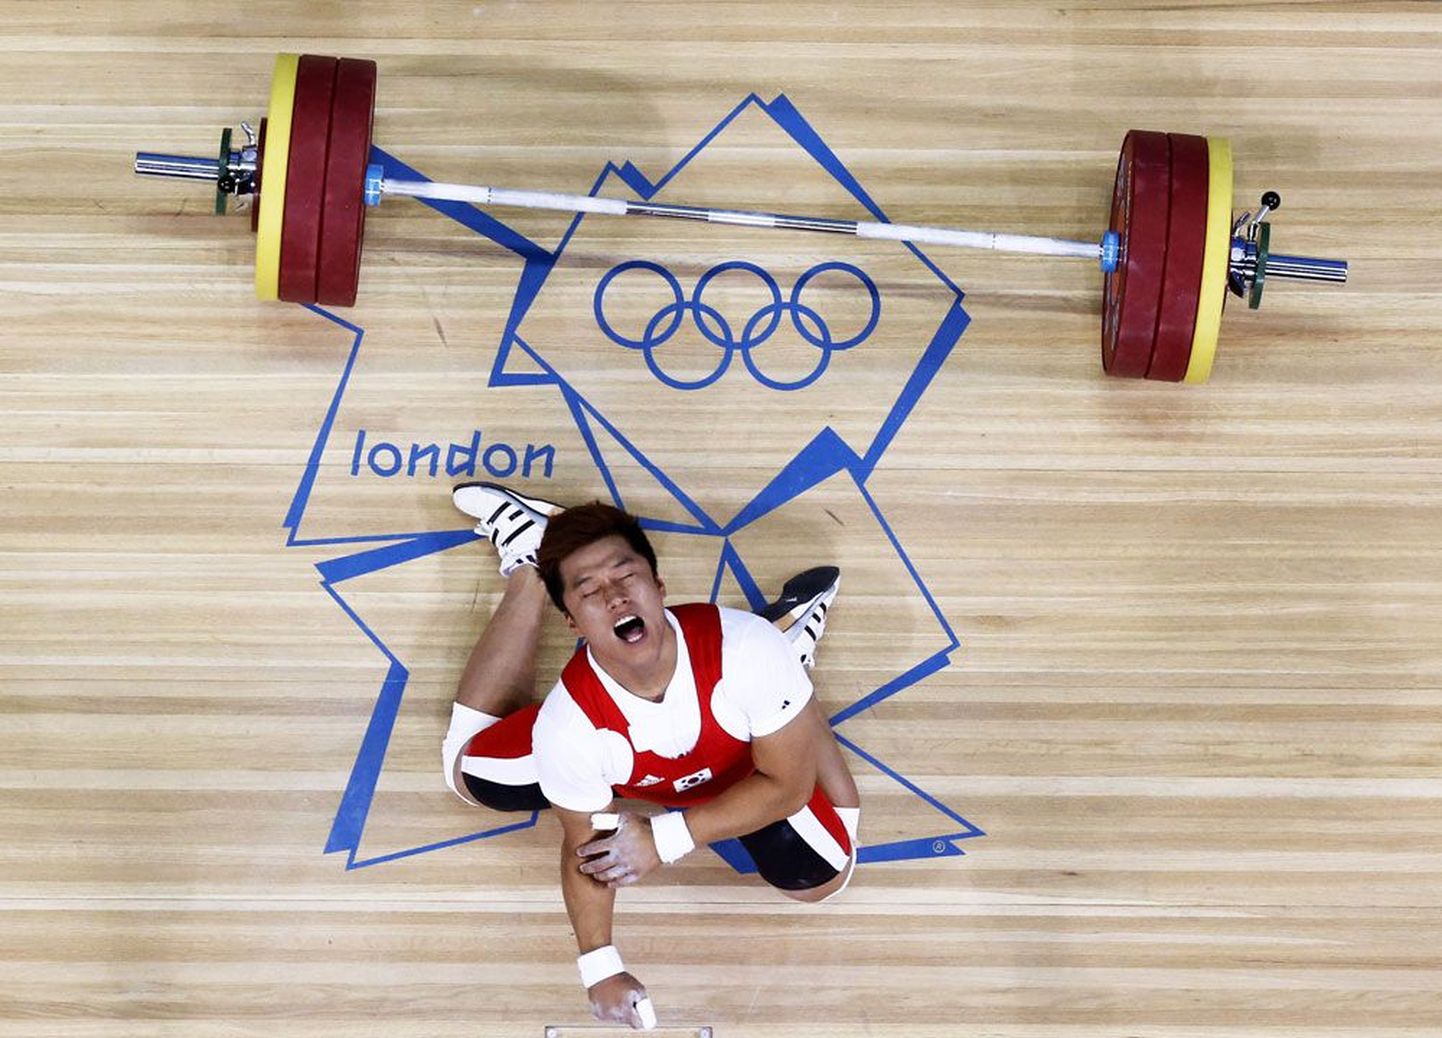 Suur tükk ajab suu lõhki: ilmselt polnud lõunakorealane Jaehyouk Sa seda eestlaste vanasõna kuulnud, et äsja Londoni olümpiamängudel ExCeli areenil võisteldes oma võimeid üle hindas.